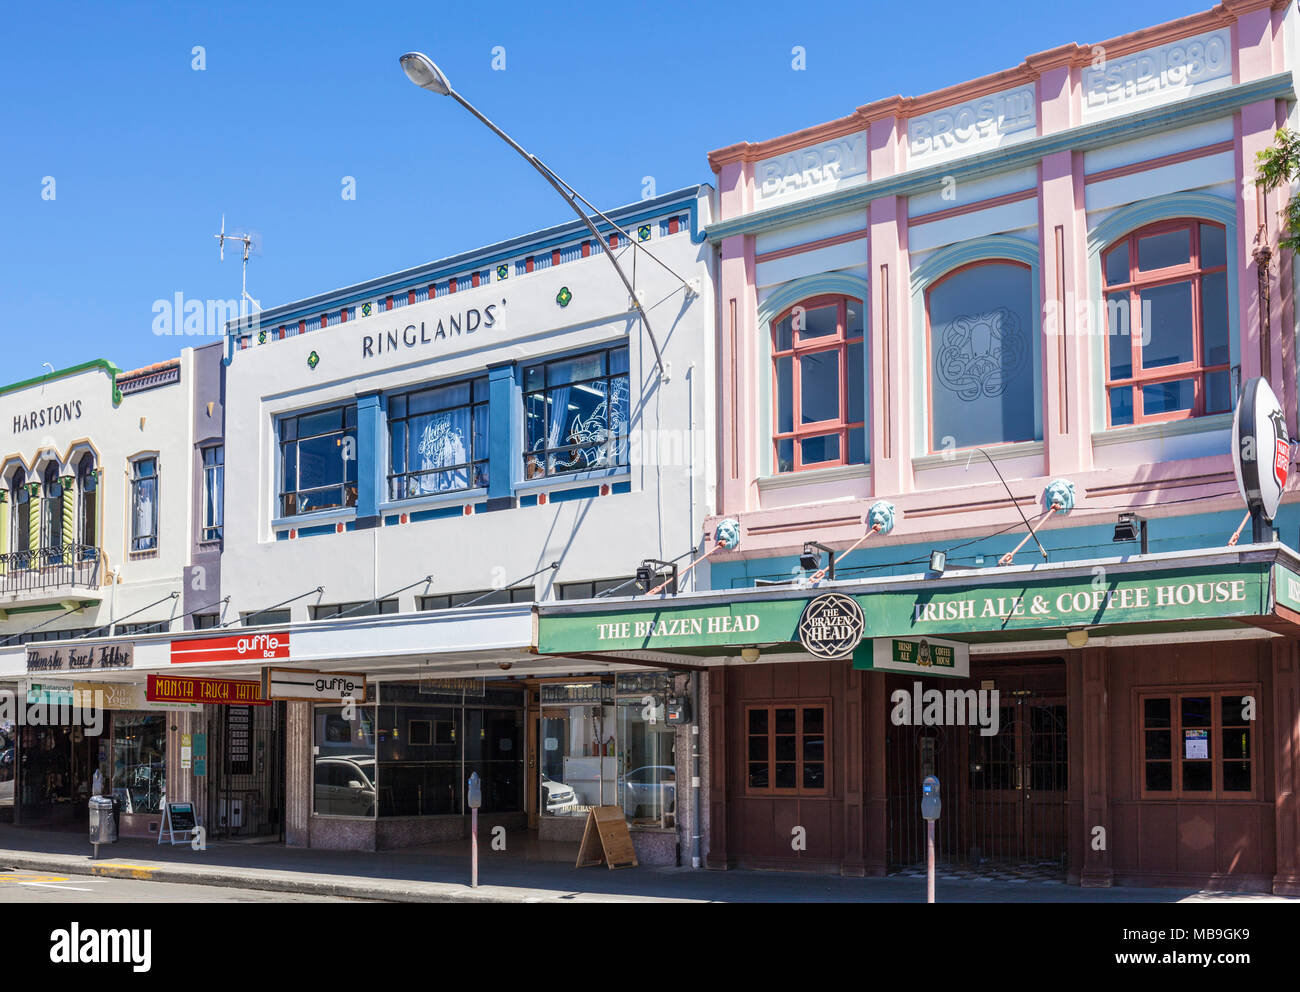 Nouvelle-zélande nouvelle-zélande napier l'architecture art déco de la ville de Napier Centre Hastings façades rue Napier New Zealand North Island nz Banque D'Images